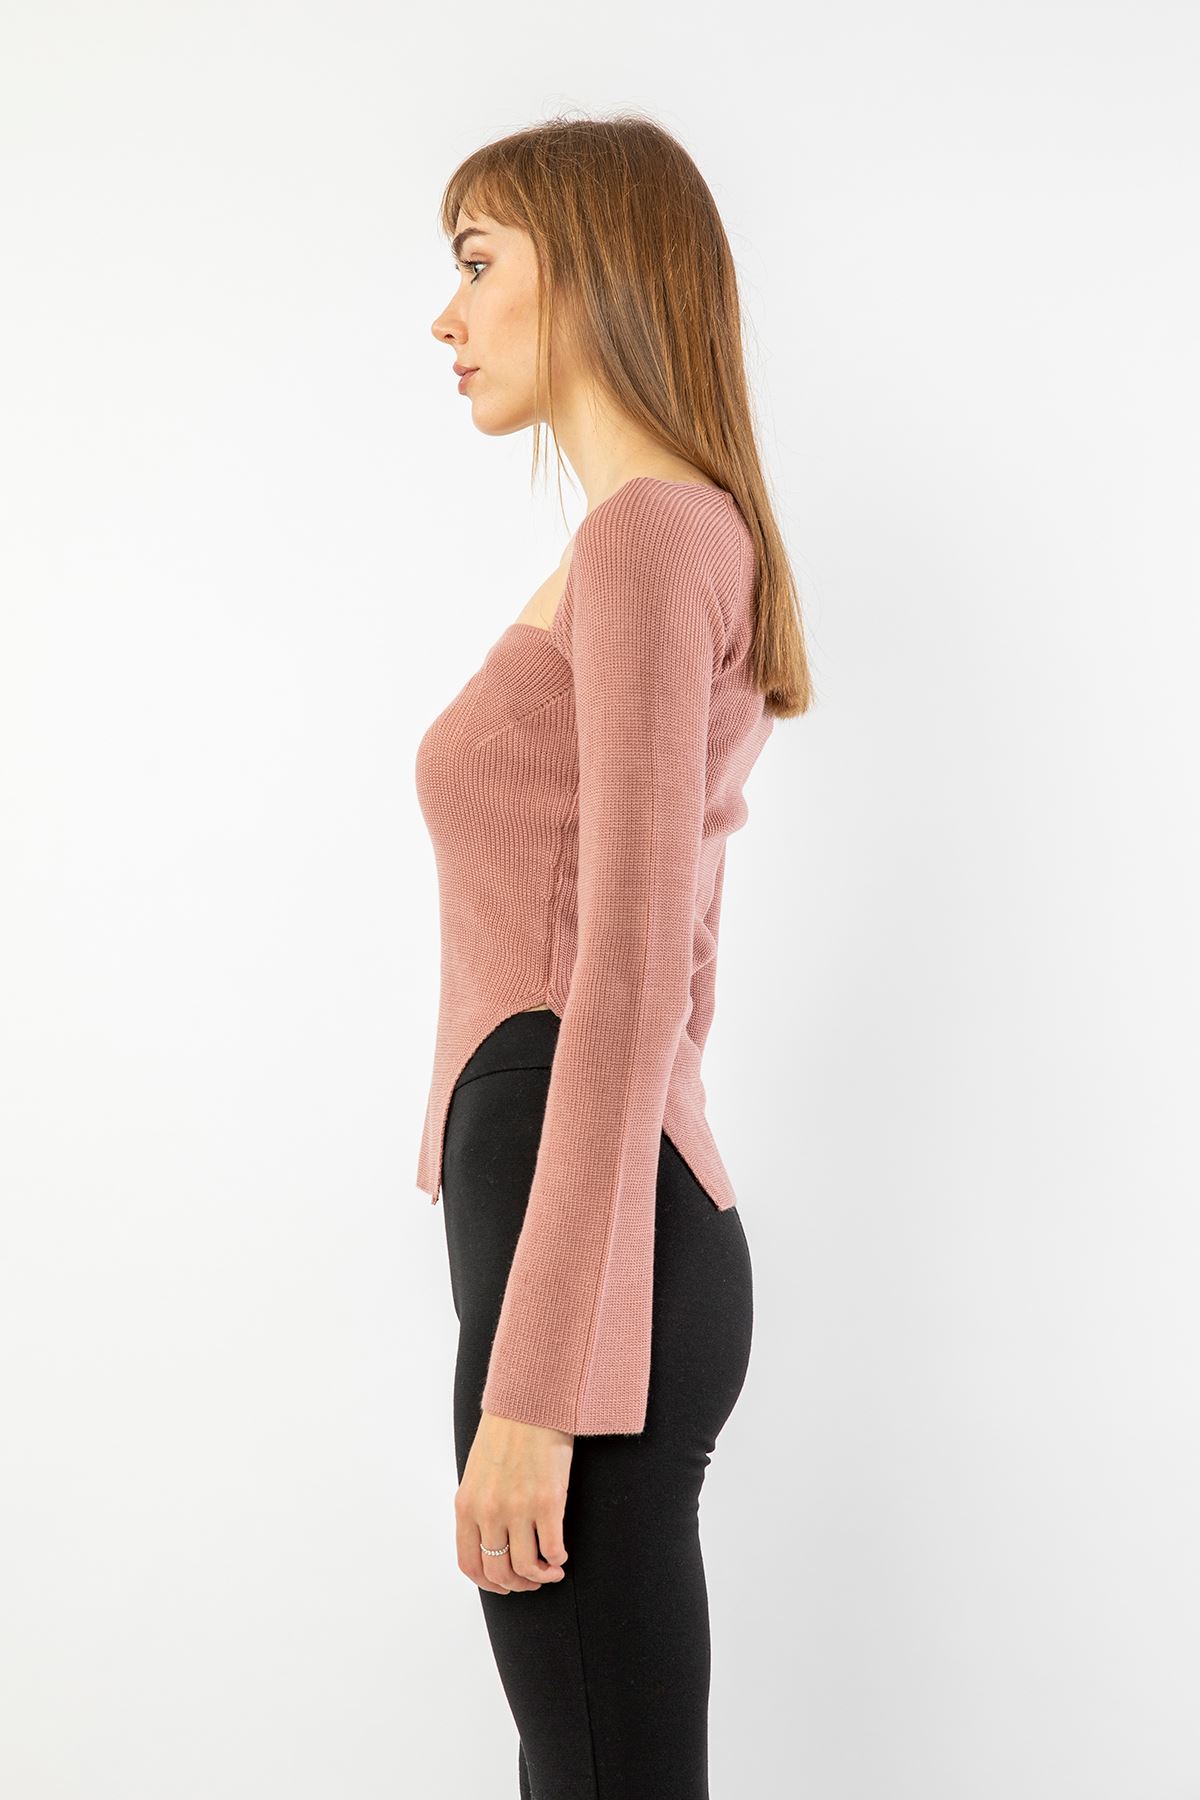 Knitwear Fabric Queen Anna Neck Short Tight Fit Asymmetric Women Sweater - Light Pink